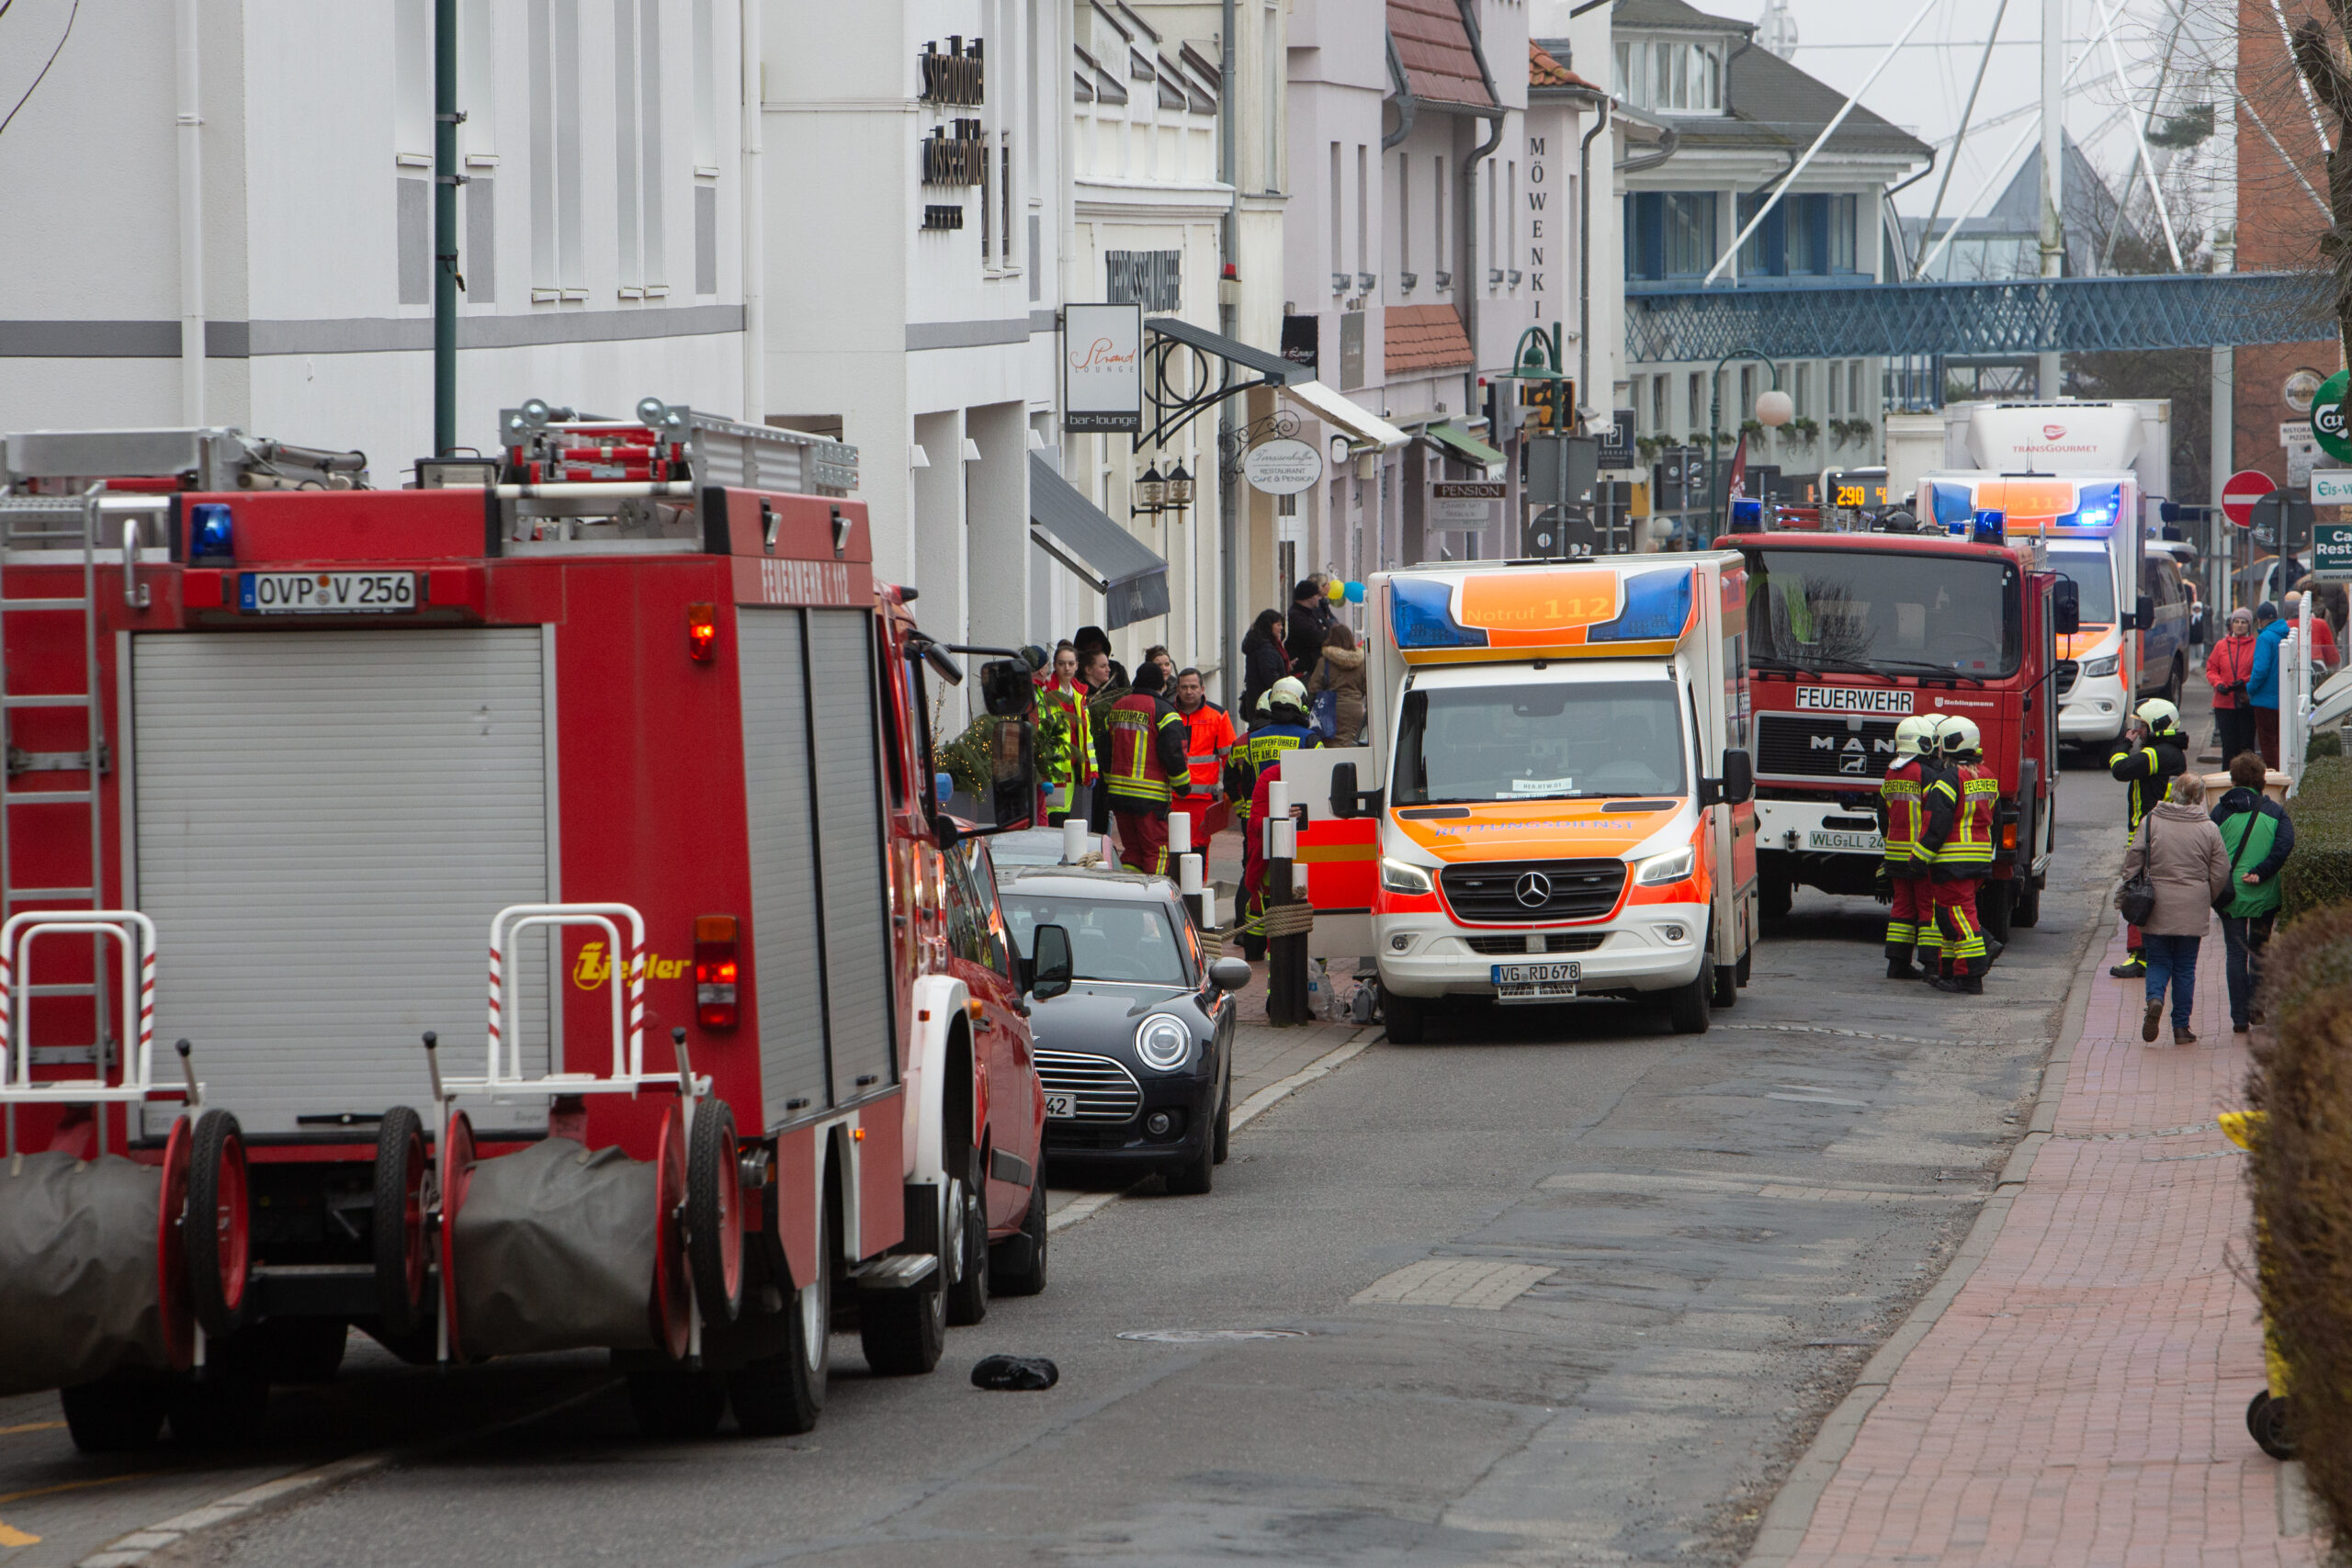 Kohlenmonoxid alarm in Hotel auf Usedom – mehrere Verletzte, ein Toter.